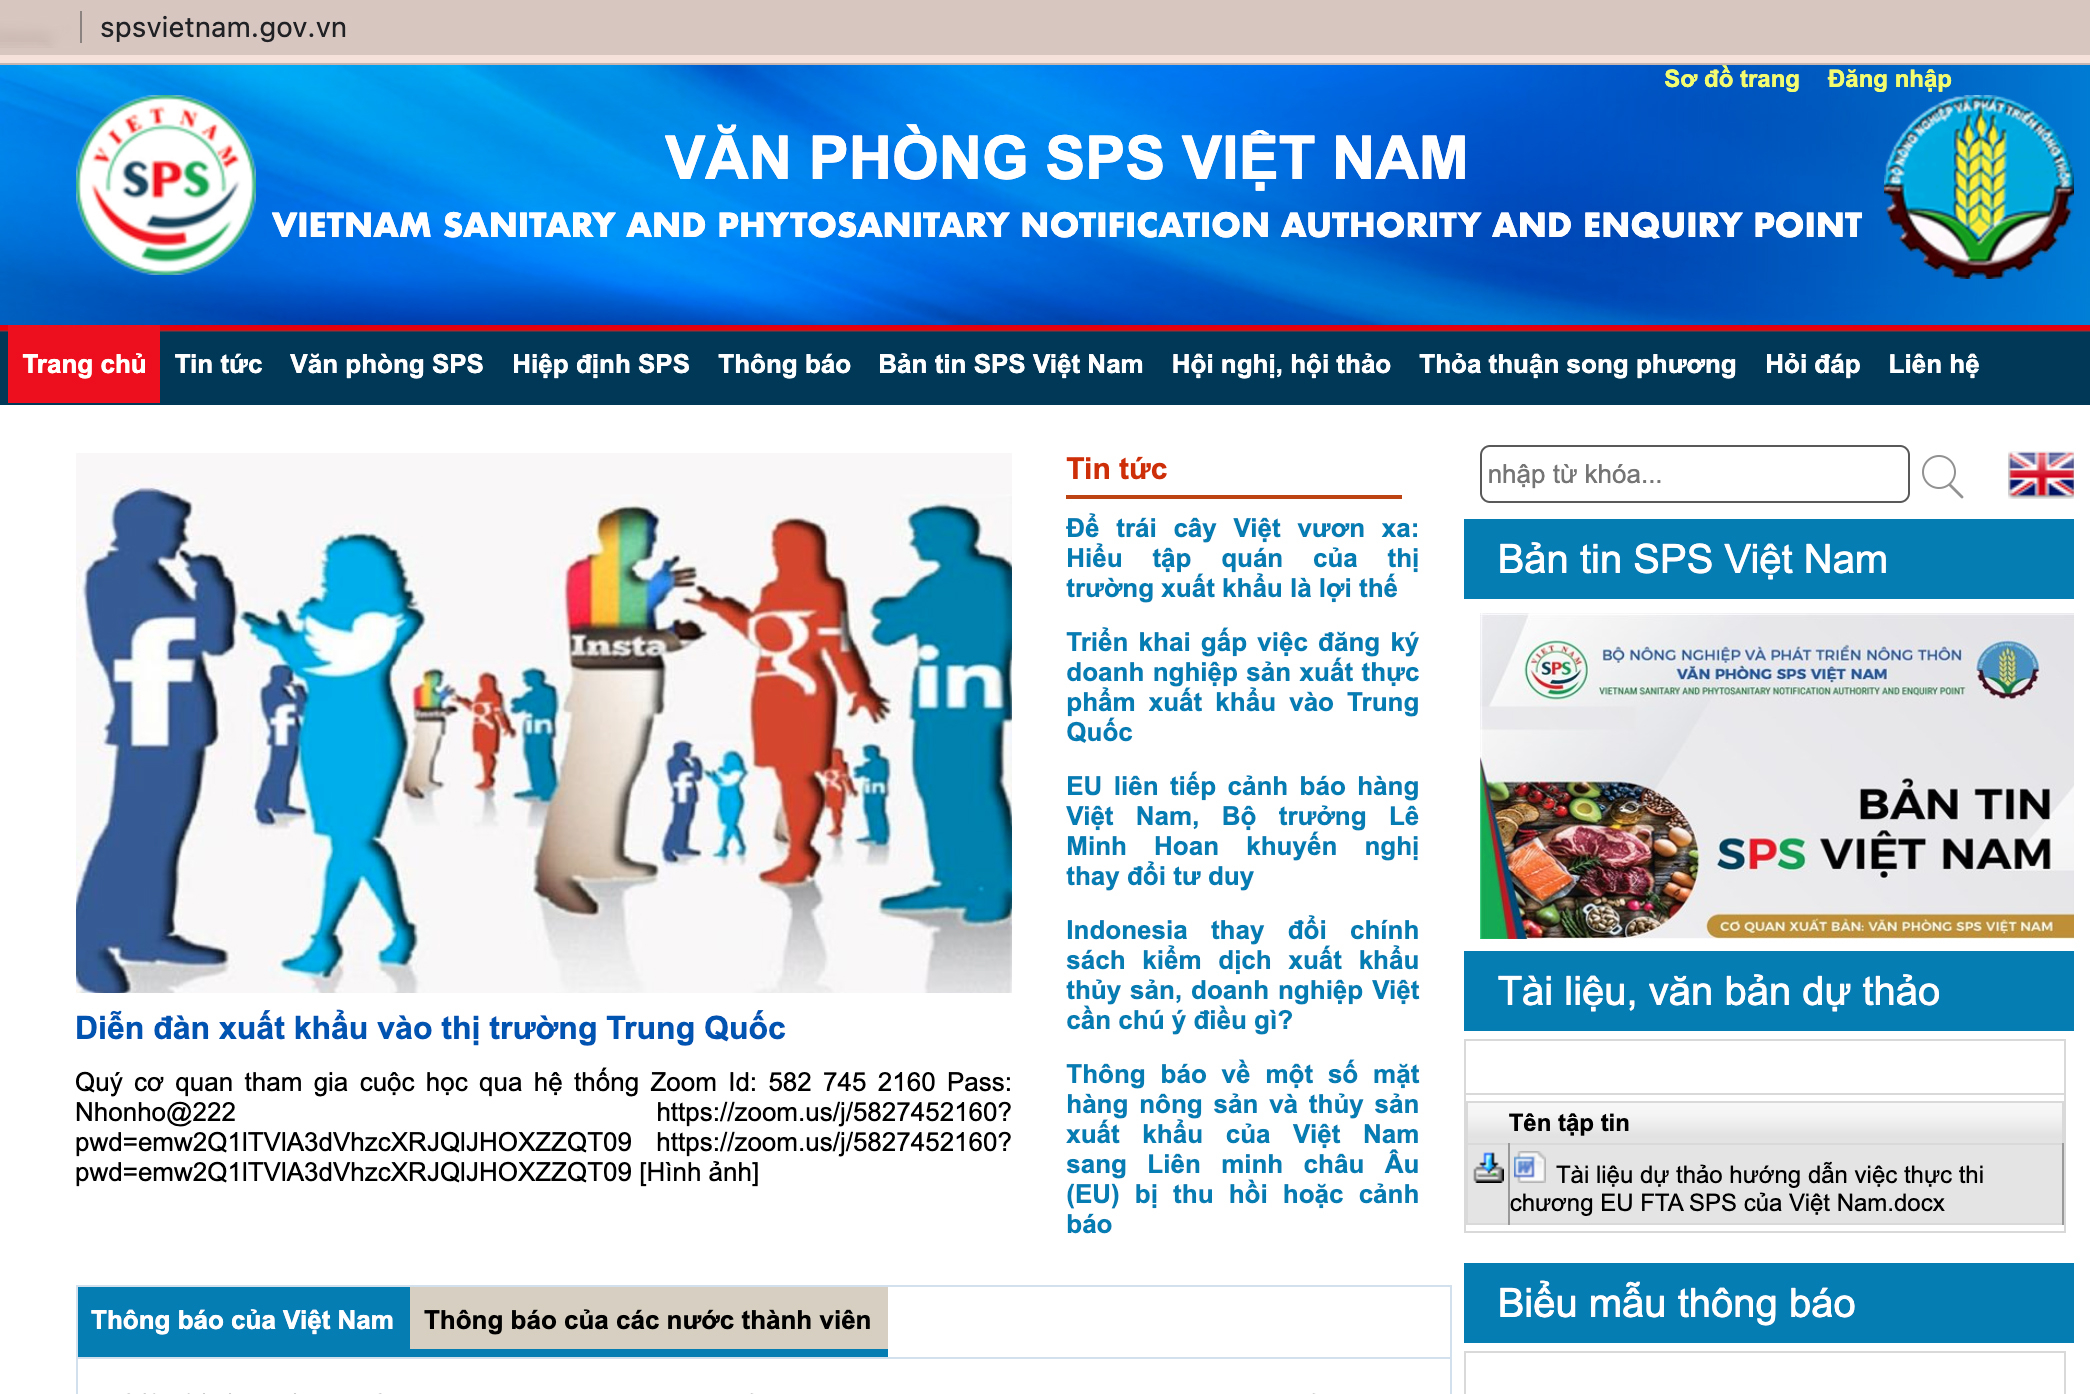 Thông báo tổ chức diễn đàn trên trang chủ của Văn phòng SPS Việt Nam.